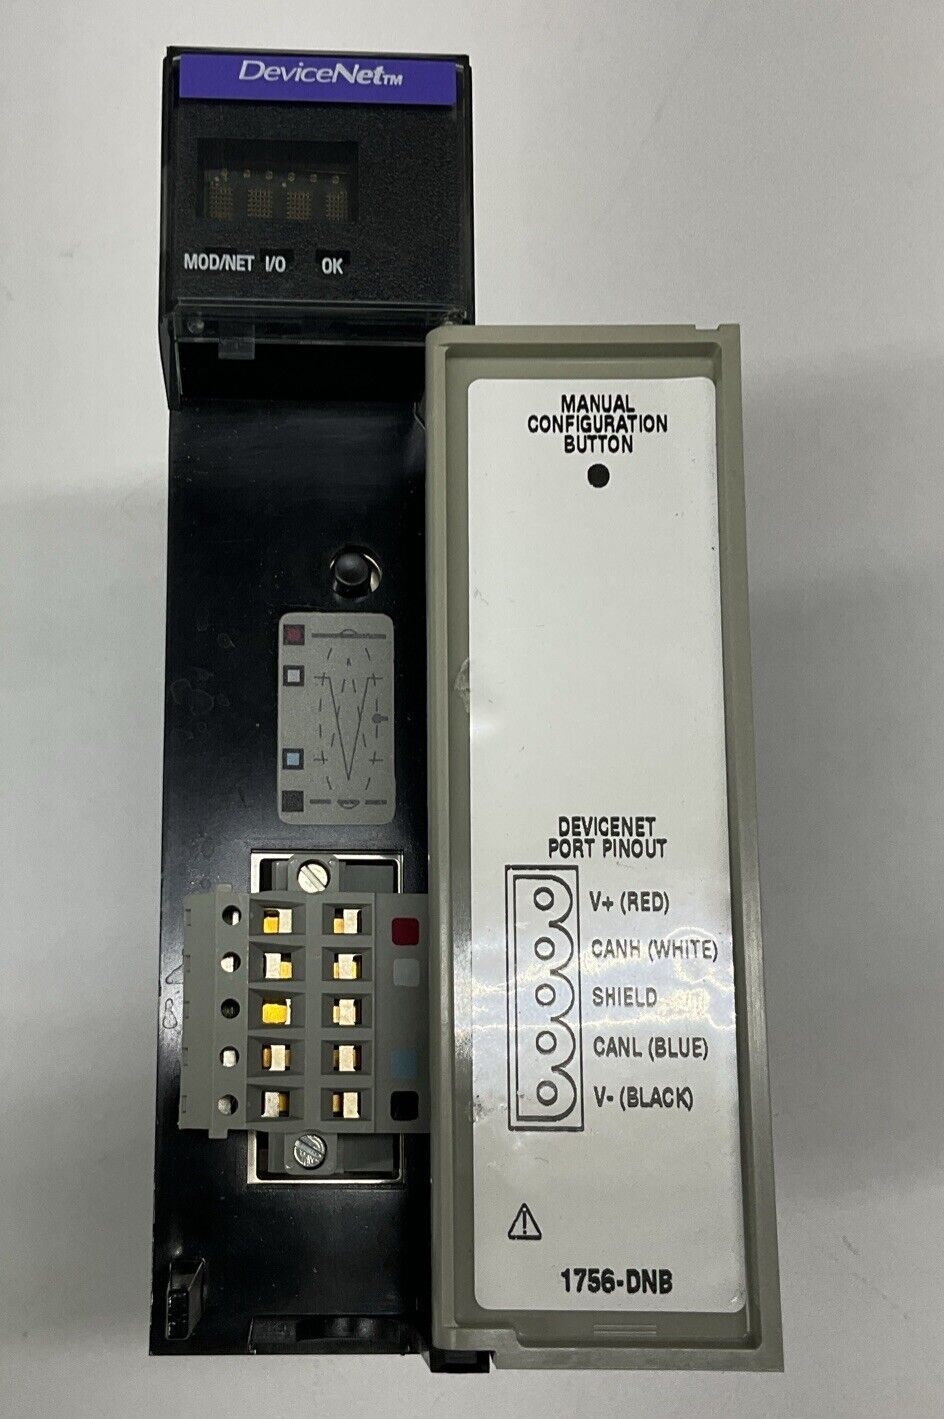 Allen-Bradley 1756-DNB/A DeviceNet Communication Module F/W 3.010 (BL288) - 0